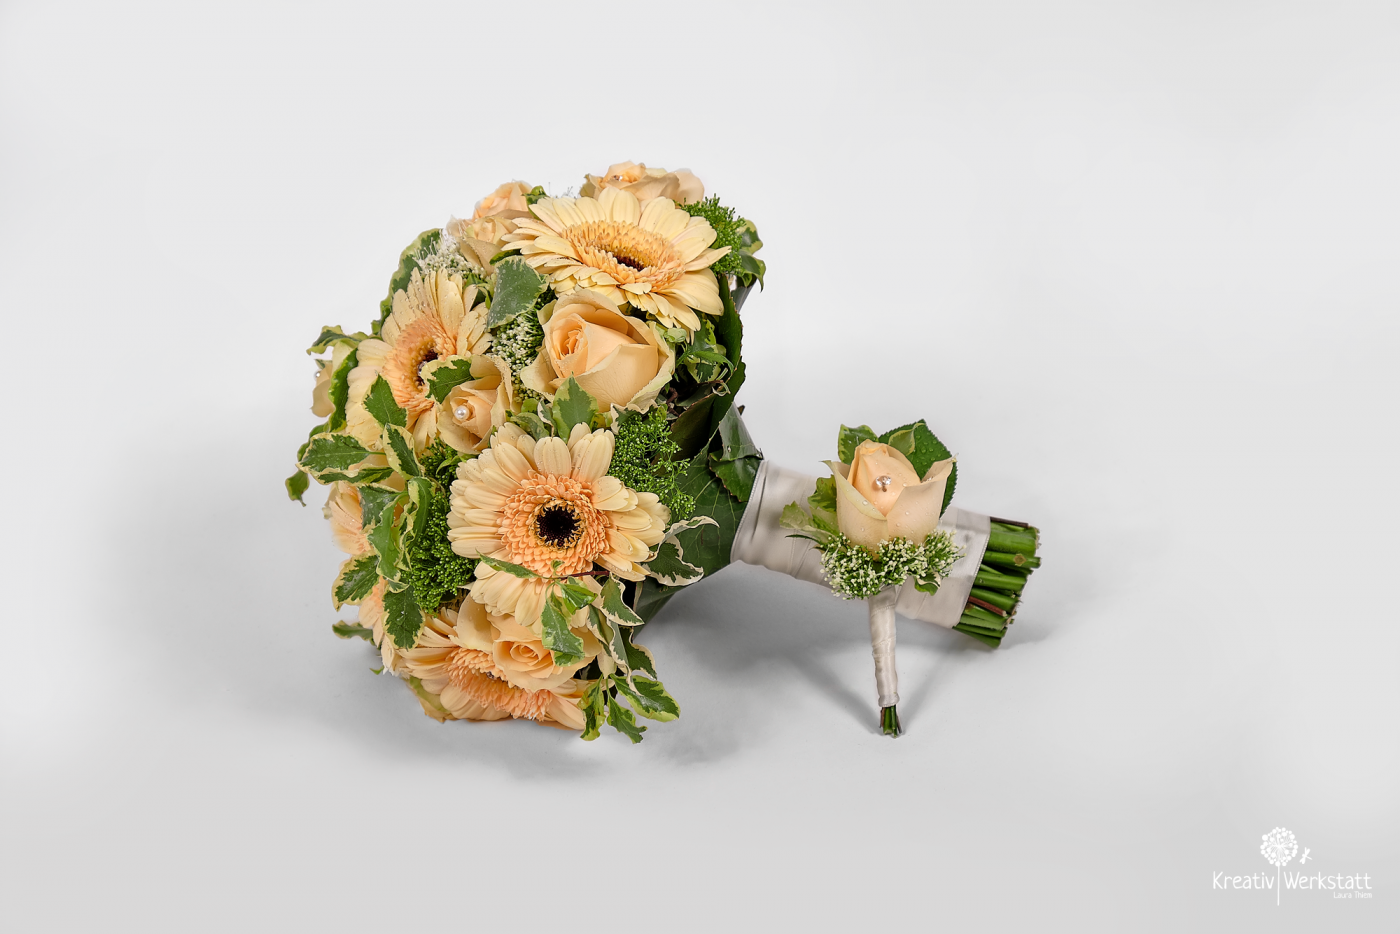 Brautstrauß aus cremefarbenen Blumen und passender Boutonniere, wichtige Elemente der Hochzeitsdekoration.